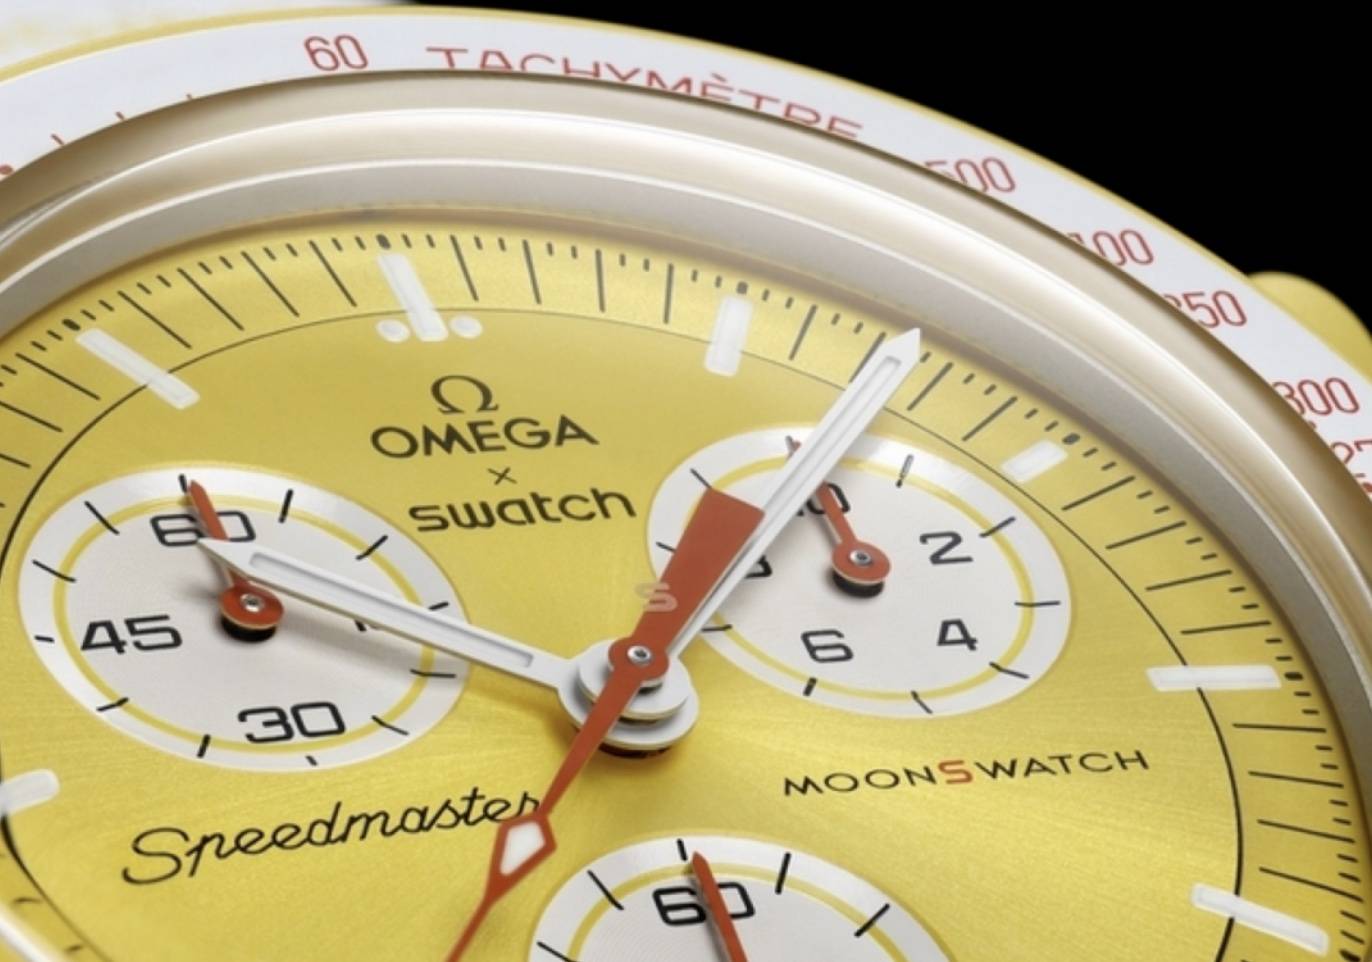 23 11 - L’esplosione globale dell’orologio co-branded OMEGA x SWATCH, è pazzesco friggere fino a 40.000 yuan?